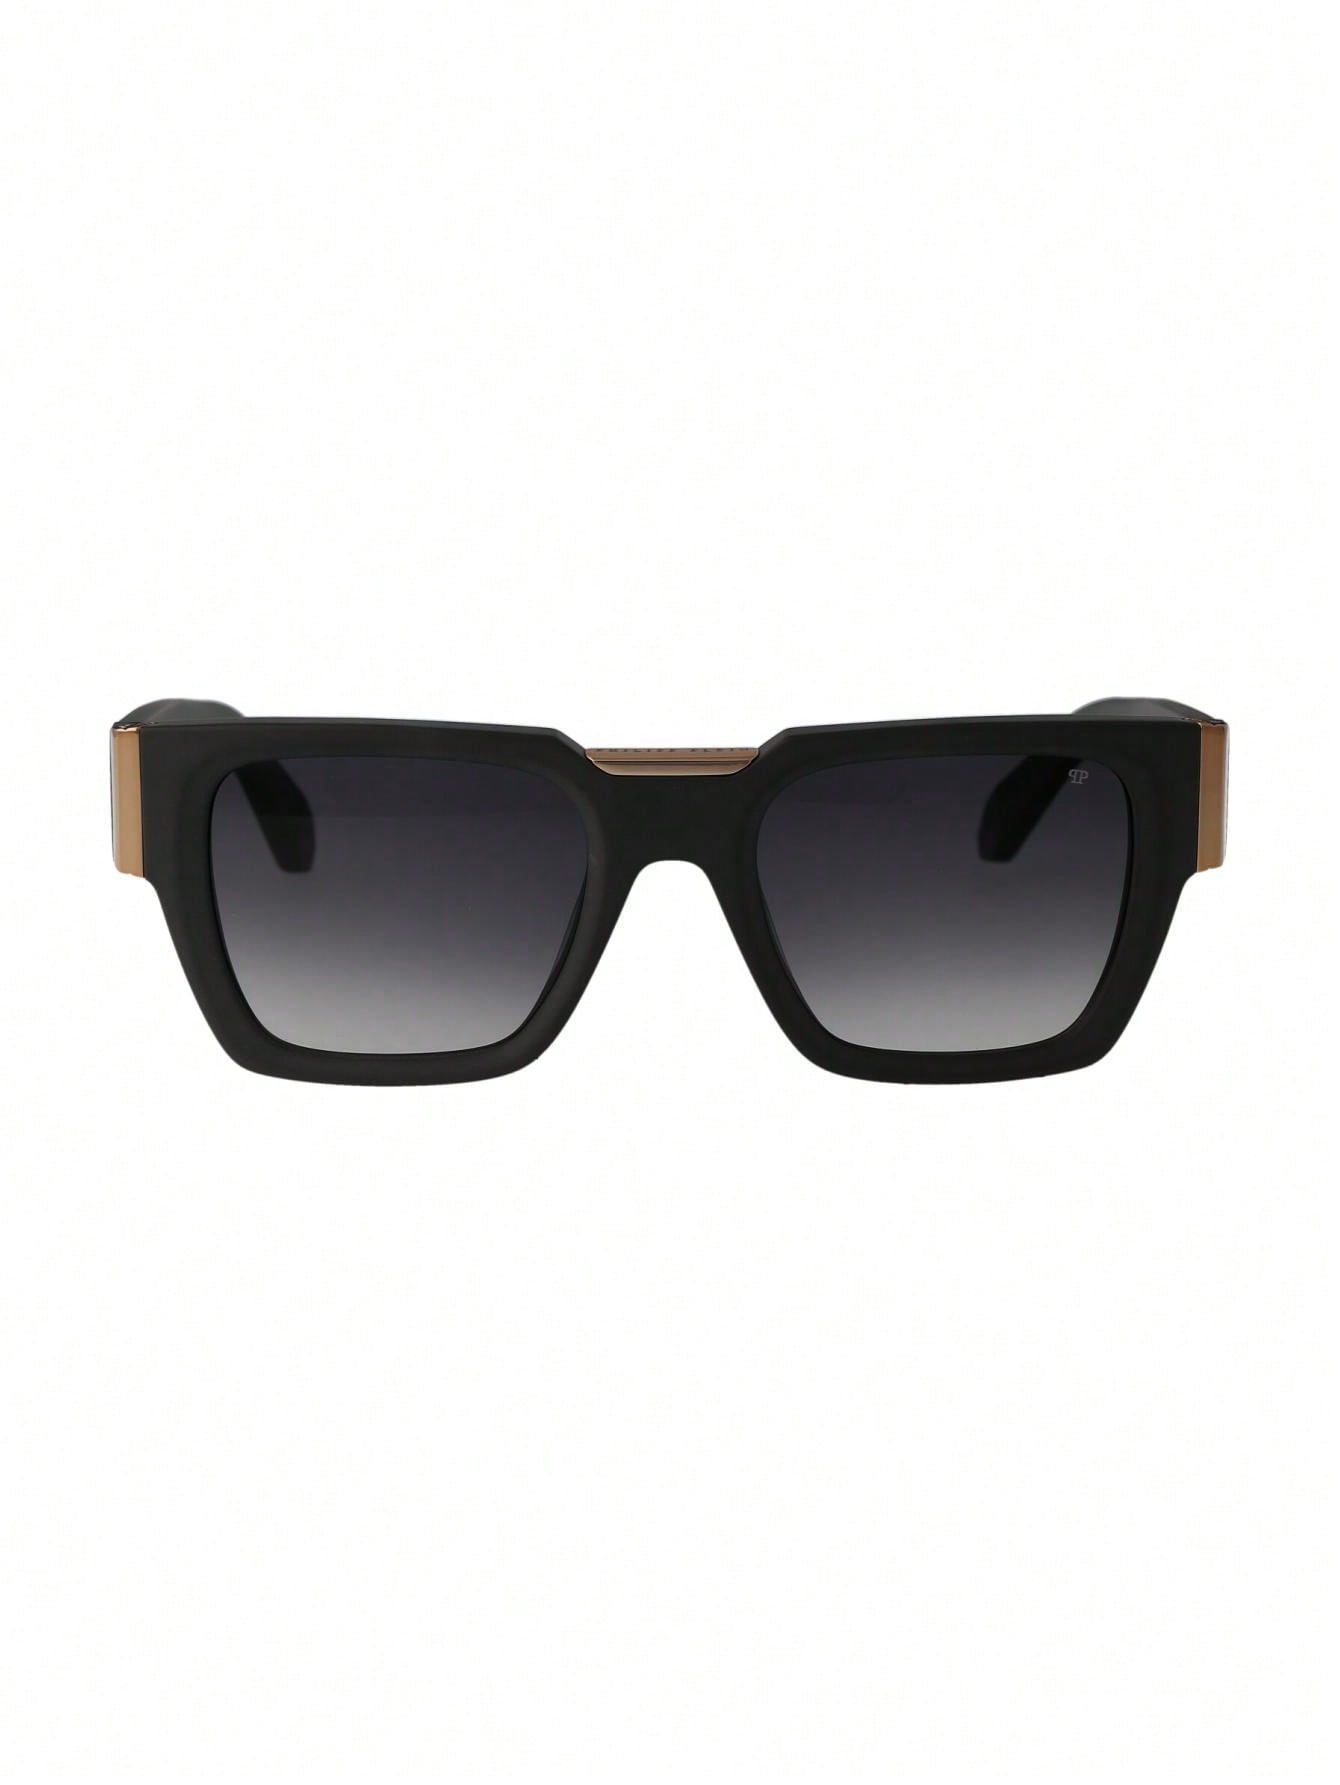 Мужские солнцезащитные очки Philipp Plein DECOR SPP095M0L46, многоцветный солнцезащитные очки philipp plein 025s 700